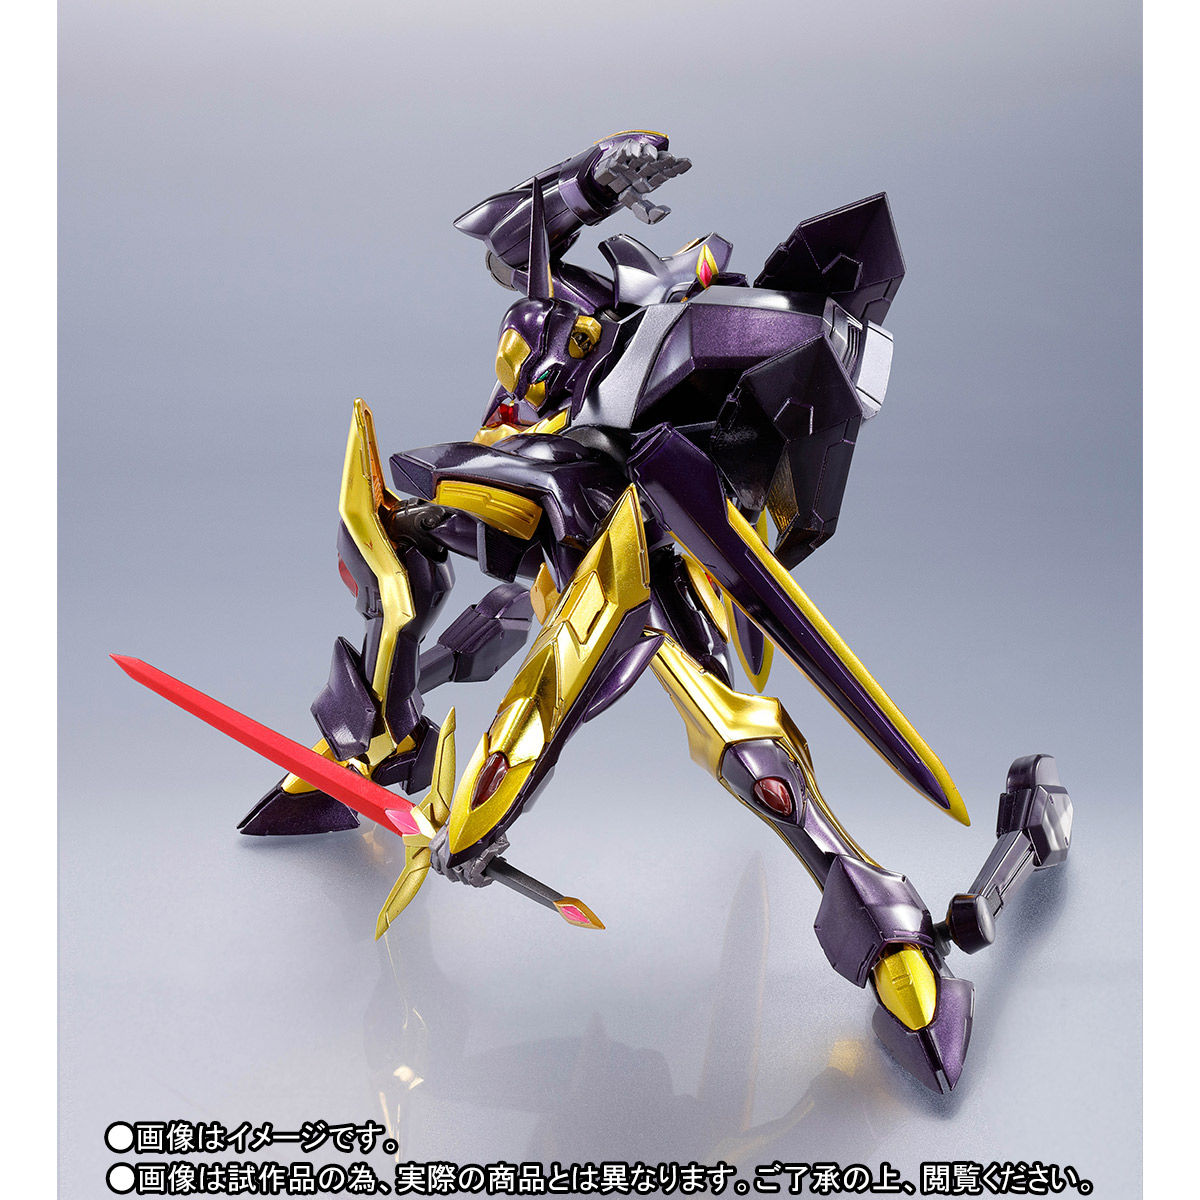 METAL ROBOT魂〈SIDE KMF〉『ランスロット・アルビオン ゼロ』コードギアス 可動フィギュア-010